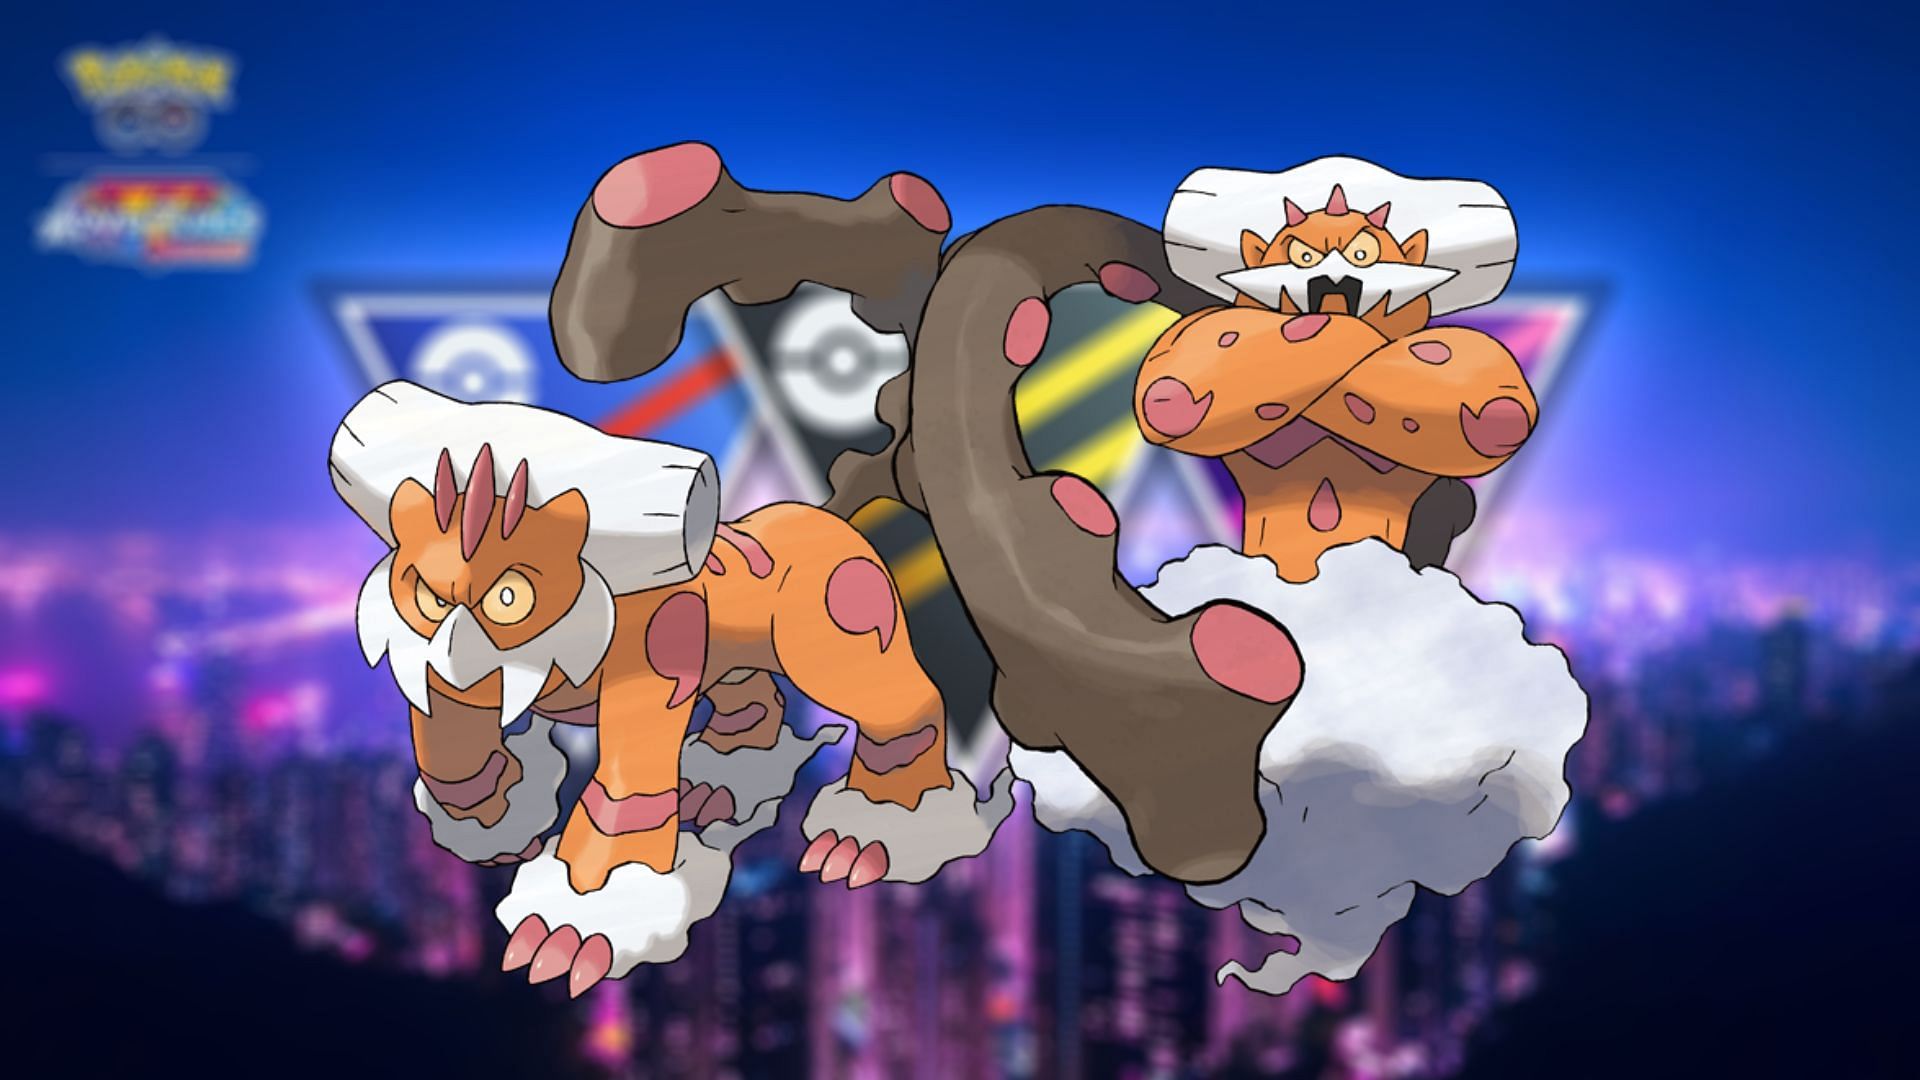 Pokémon GO: novo evento traz Skrelp, Landorus Therian e mais, esports